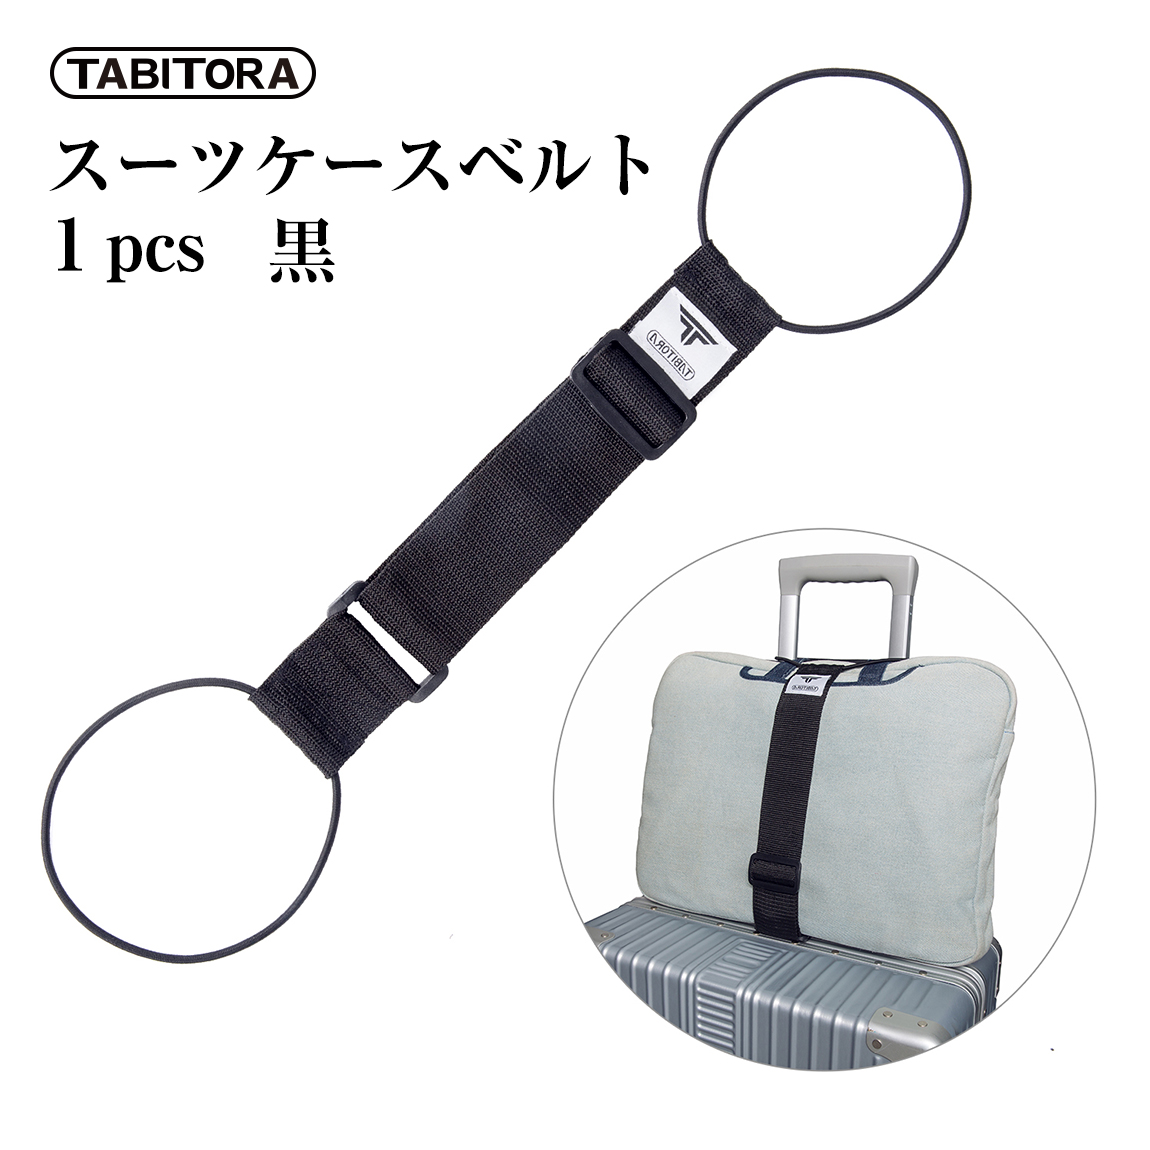 送料無料 TABITORA(タビトラ) バッグとめるベルト 旅行用品 スーツケースベルト ブラック 57~75cm(調節可)×幅5cm BXD01-1PCS